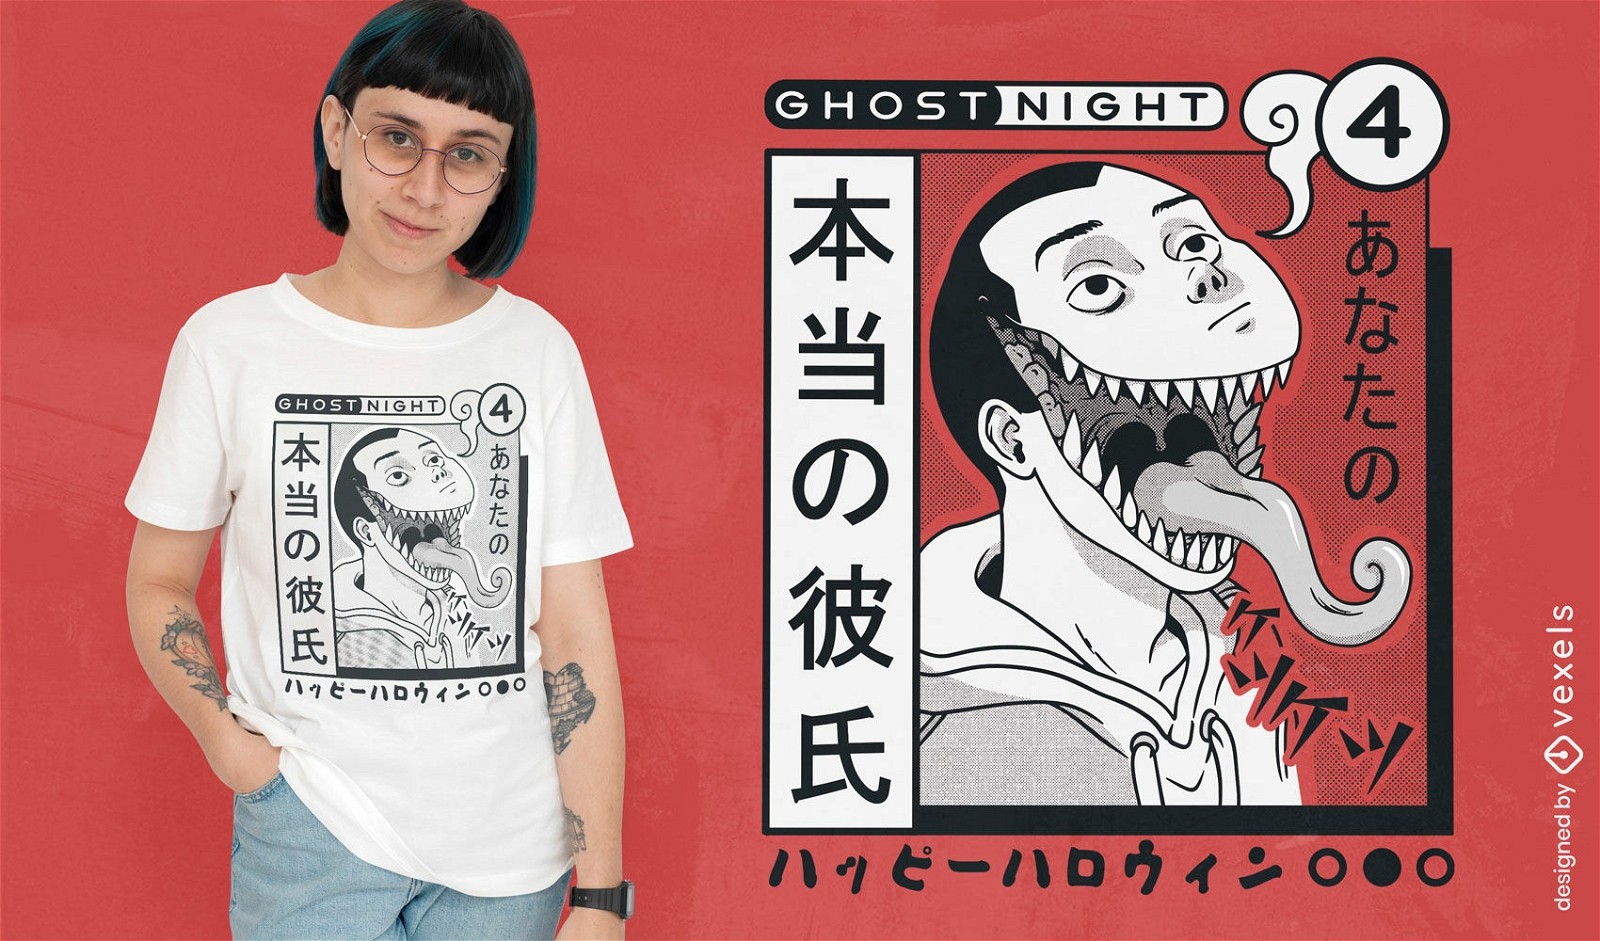 Ghost night horror manga t-shirt design